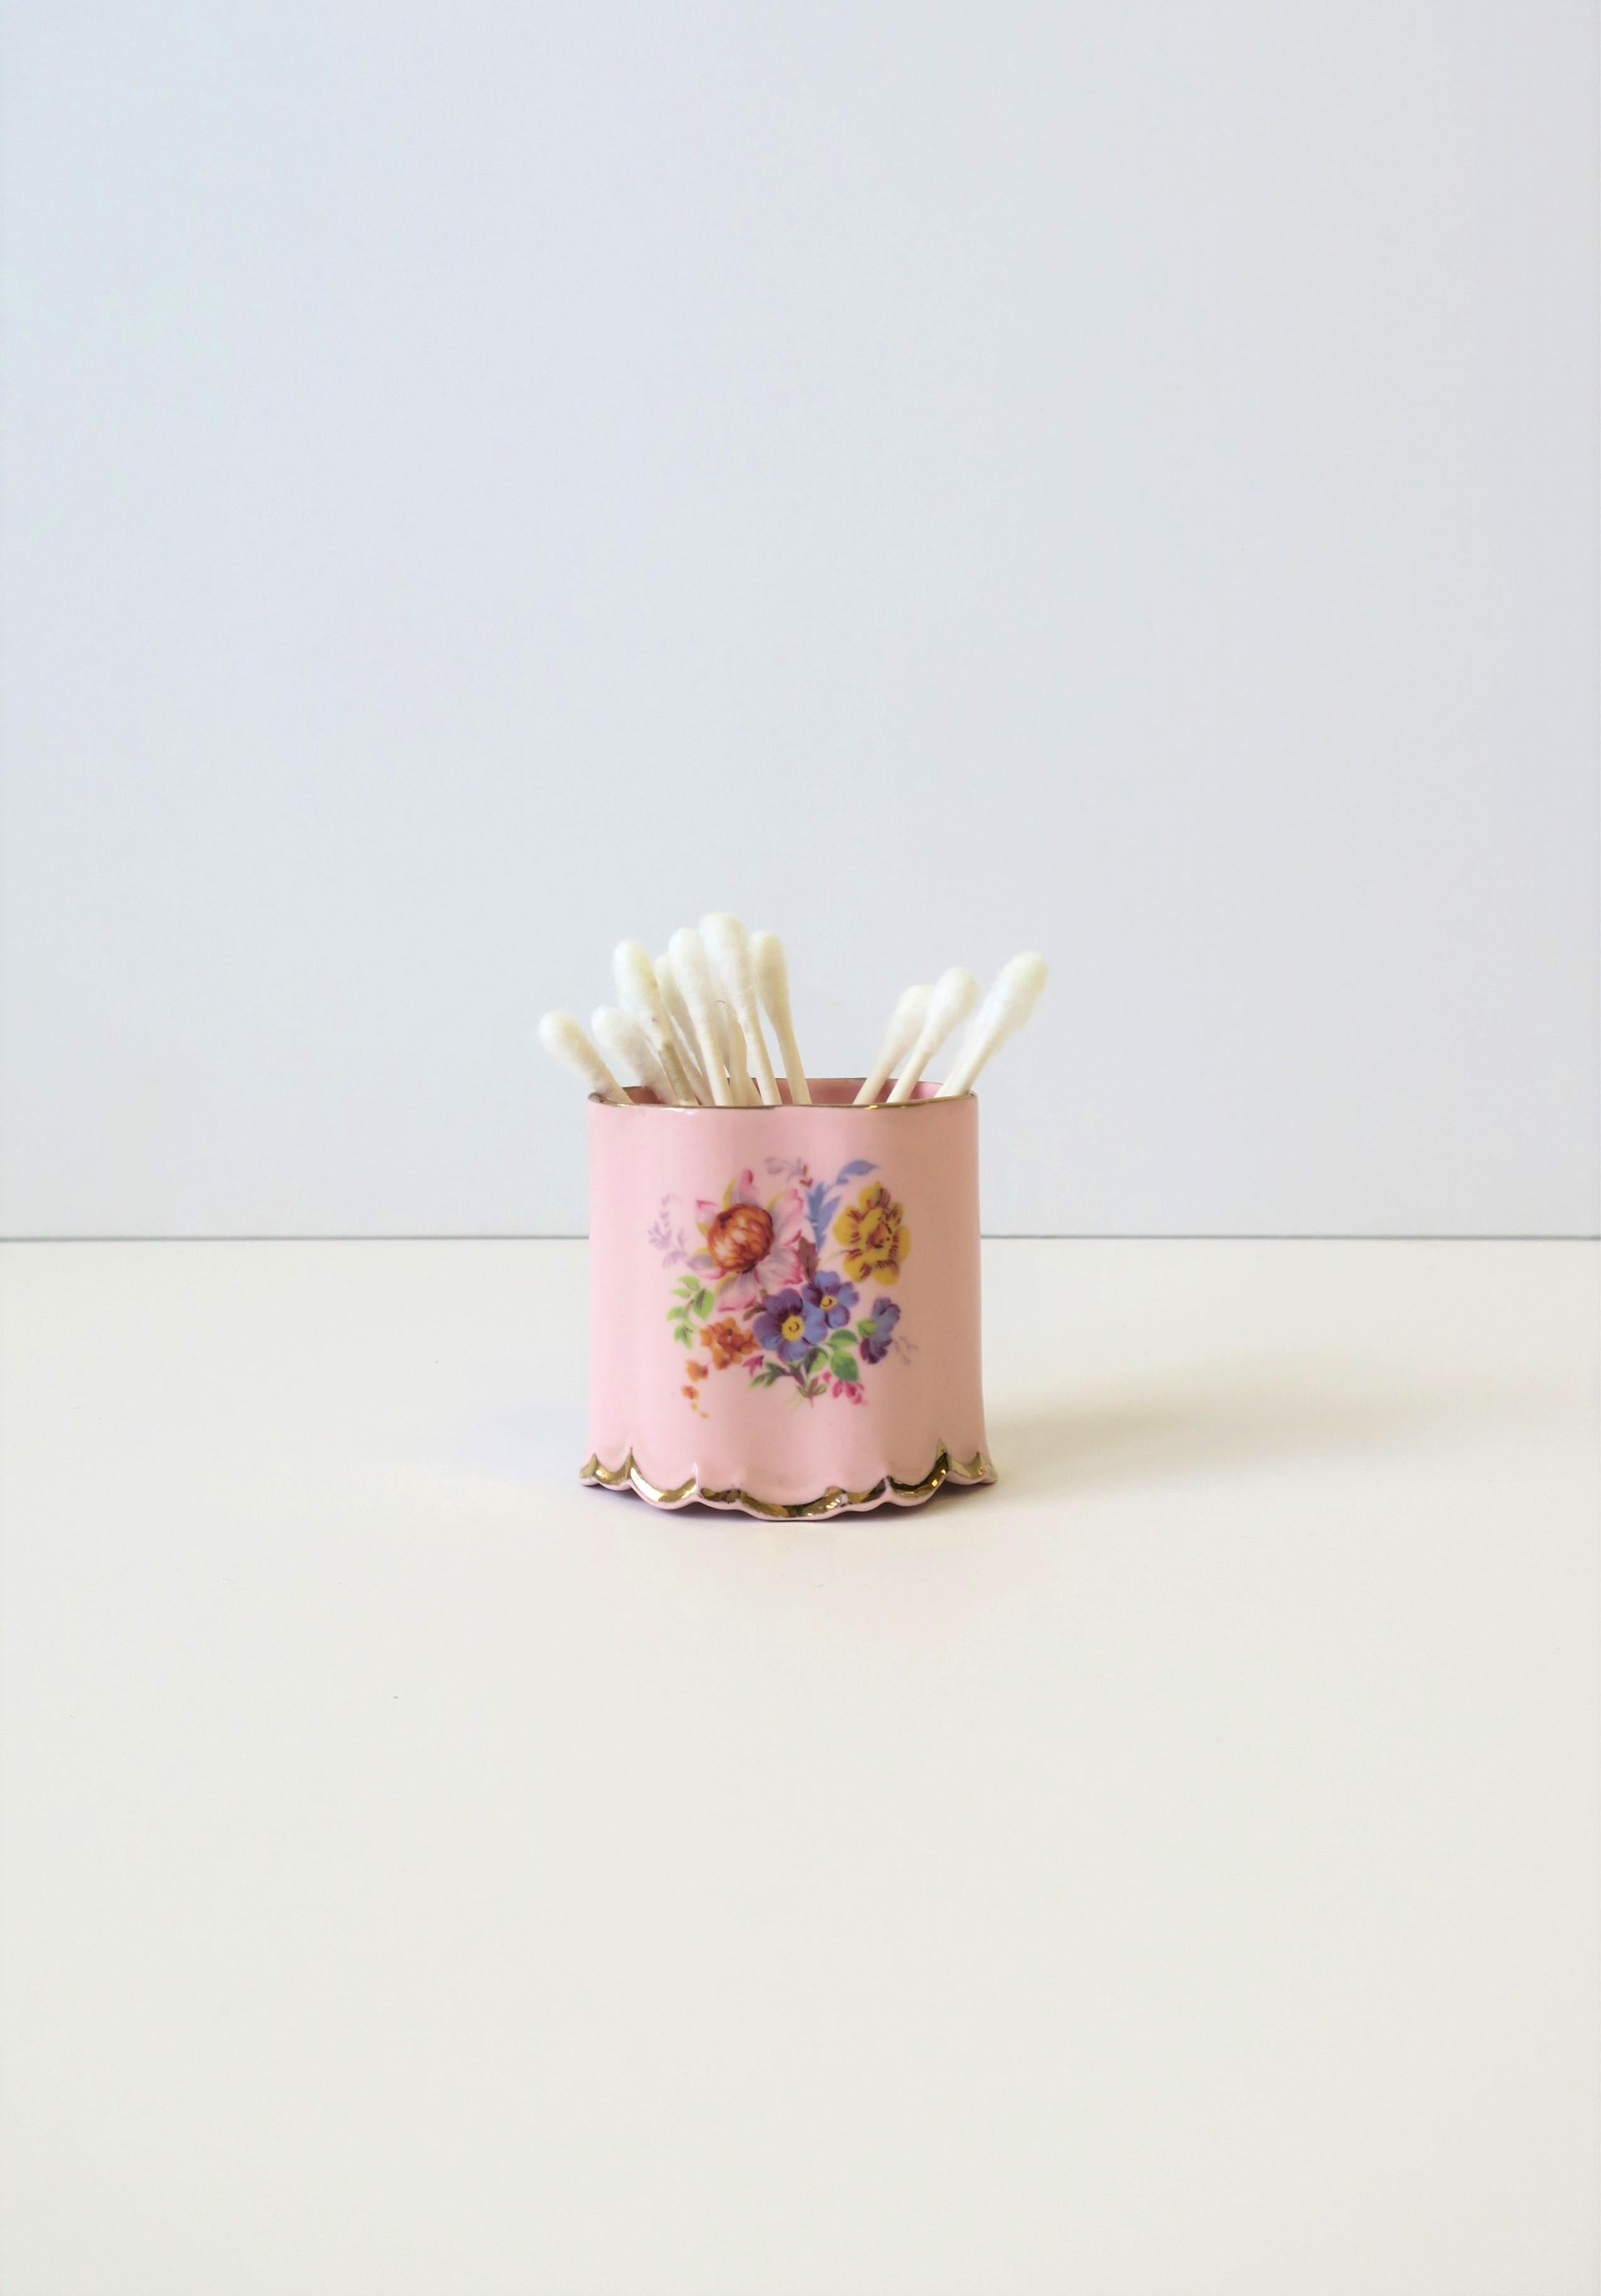 Porte-cigarettes en porcelaine rose anglaise, de style CIRCA, par Arthur Bowker for Staffordshire, vers le début du XXe siècle, Angleterre. La pièce est en porcelaine rose, ovale, avec un motif floral en chintz sur le devant et le dos, un bord